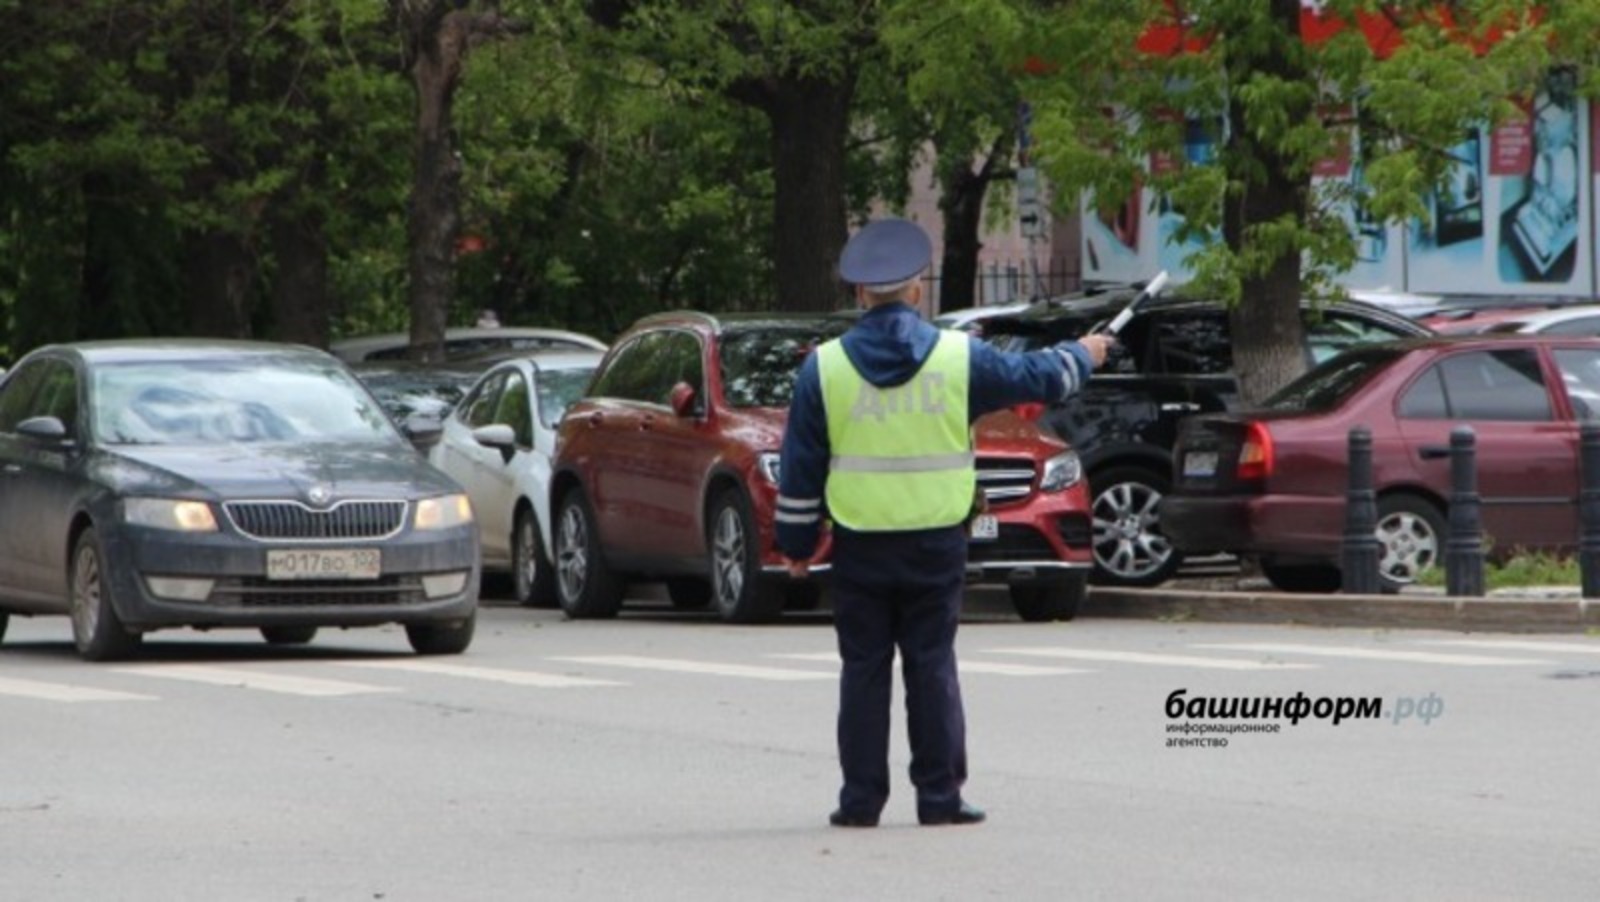 Глава ГИБДД по Башкирии предупредил водителей о массовых проверках и назвал улицы, где пройдут рейды